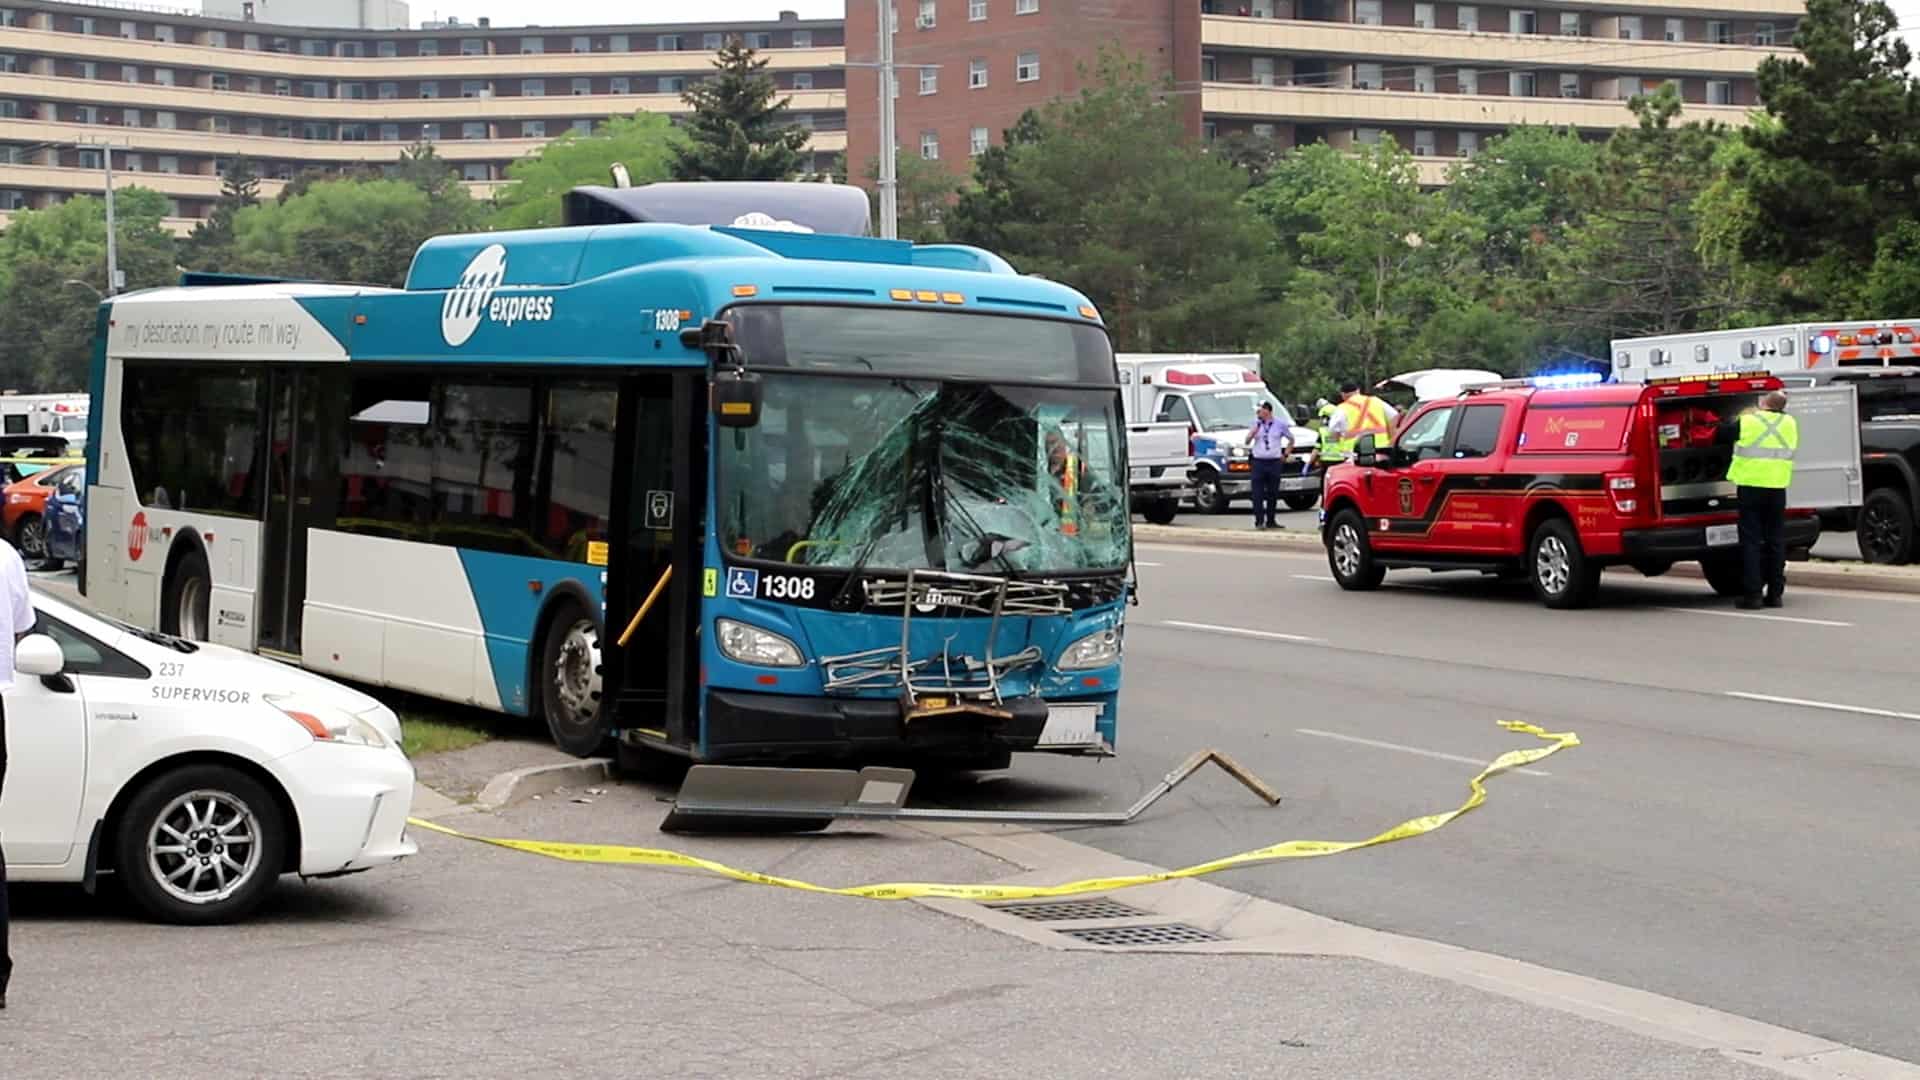 miway bus crash